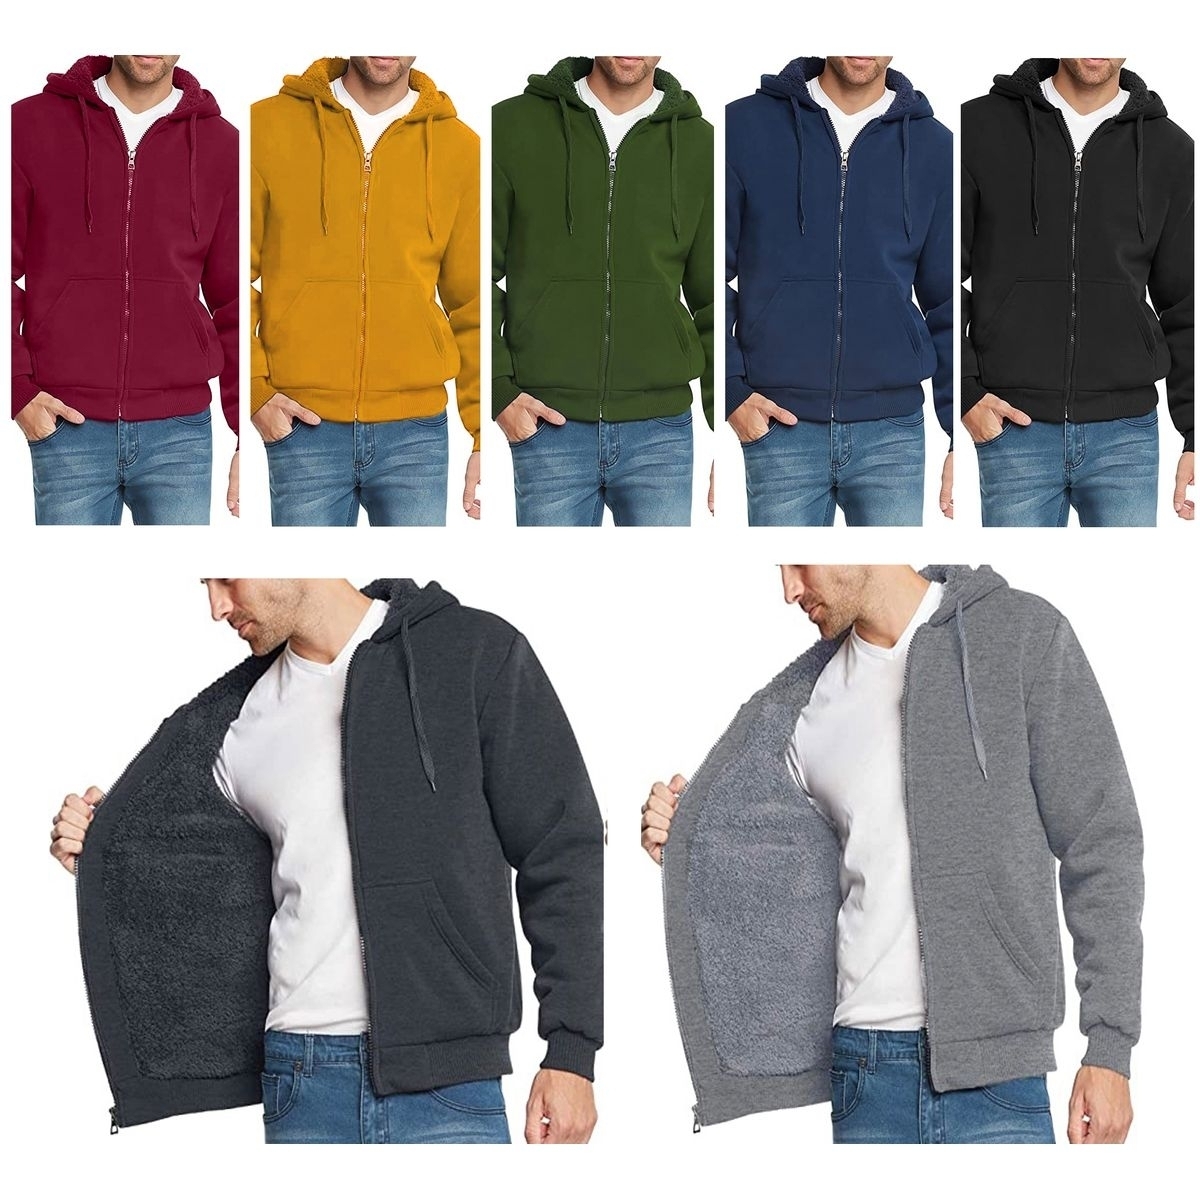 Men's Heavyweight Sherpa Lined Fleece Zip-Up Hoodie Sweater Jacket - Navy, Medium